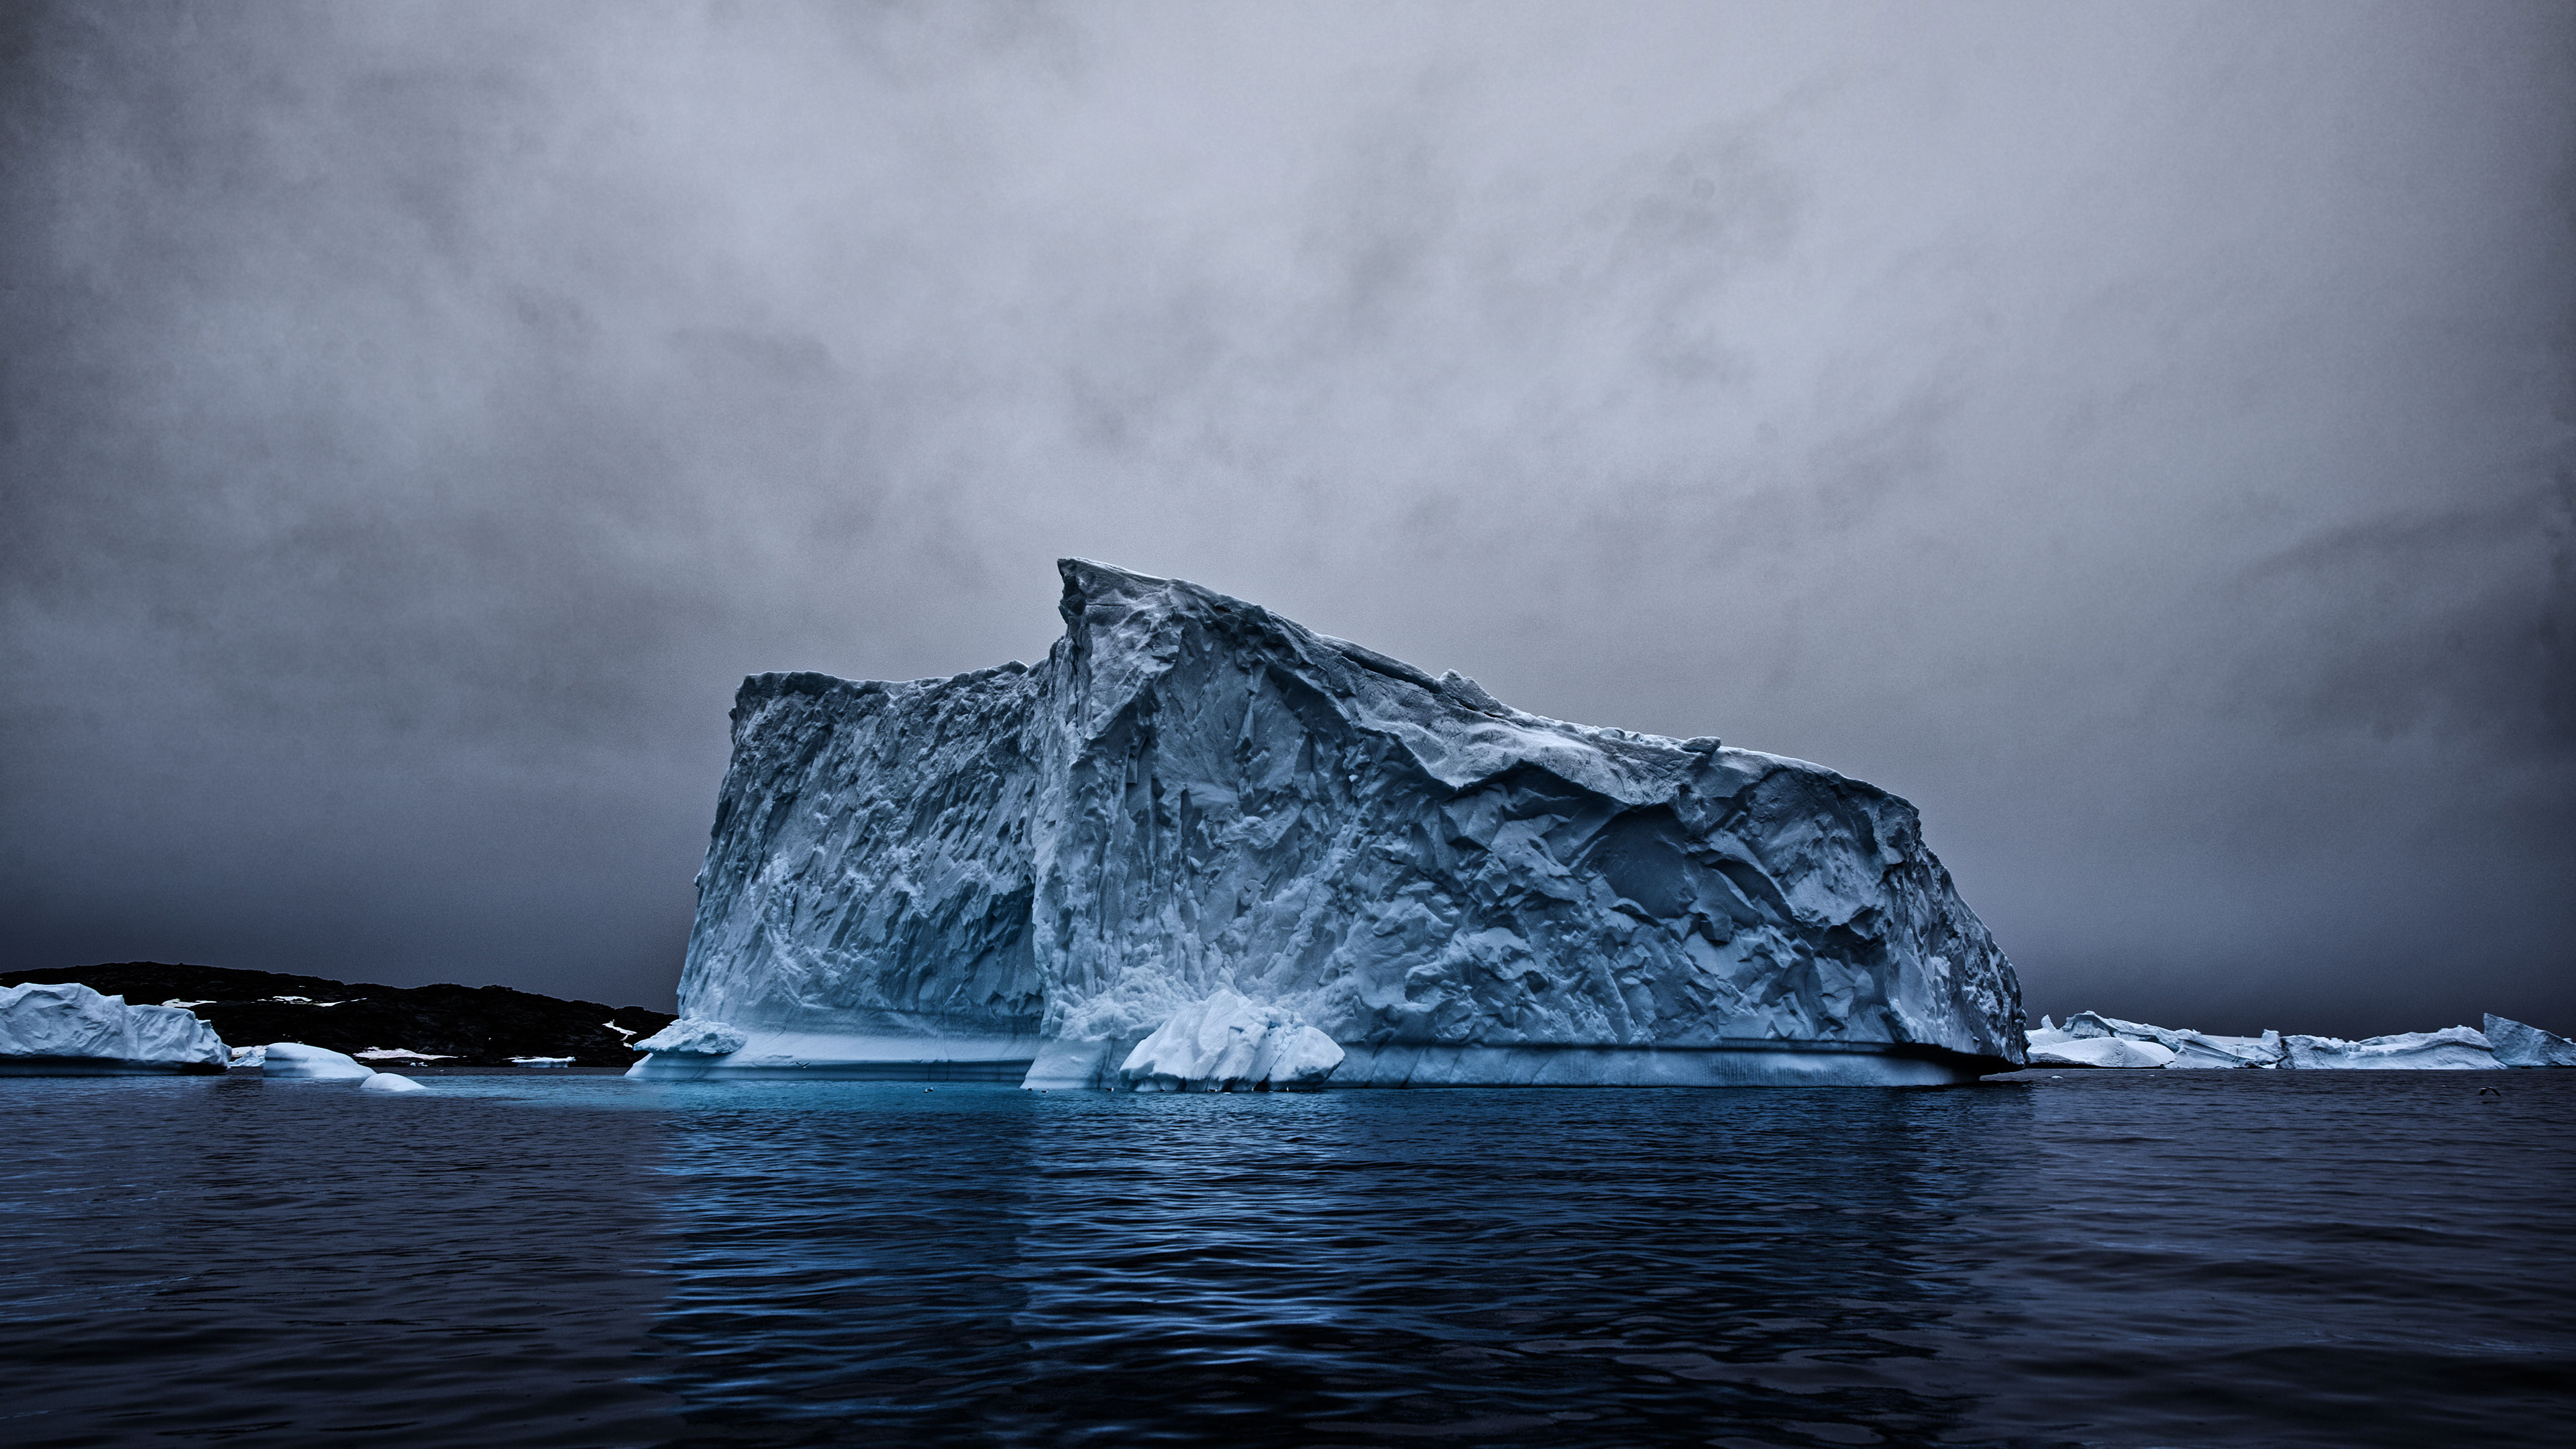 Arctic Ocean, Iceberg wallpapers, Arctic Ocean scenery, Svalbard, 3840x2160 4K Desktop